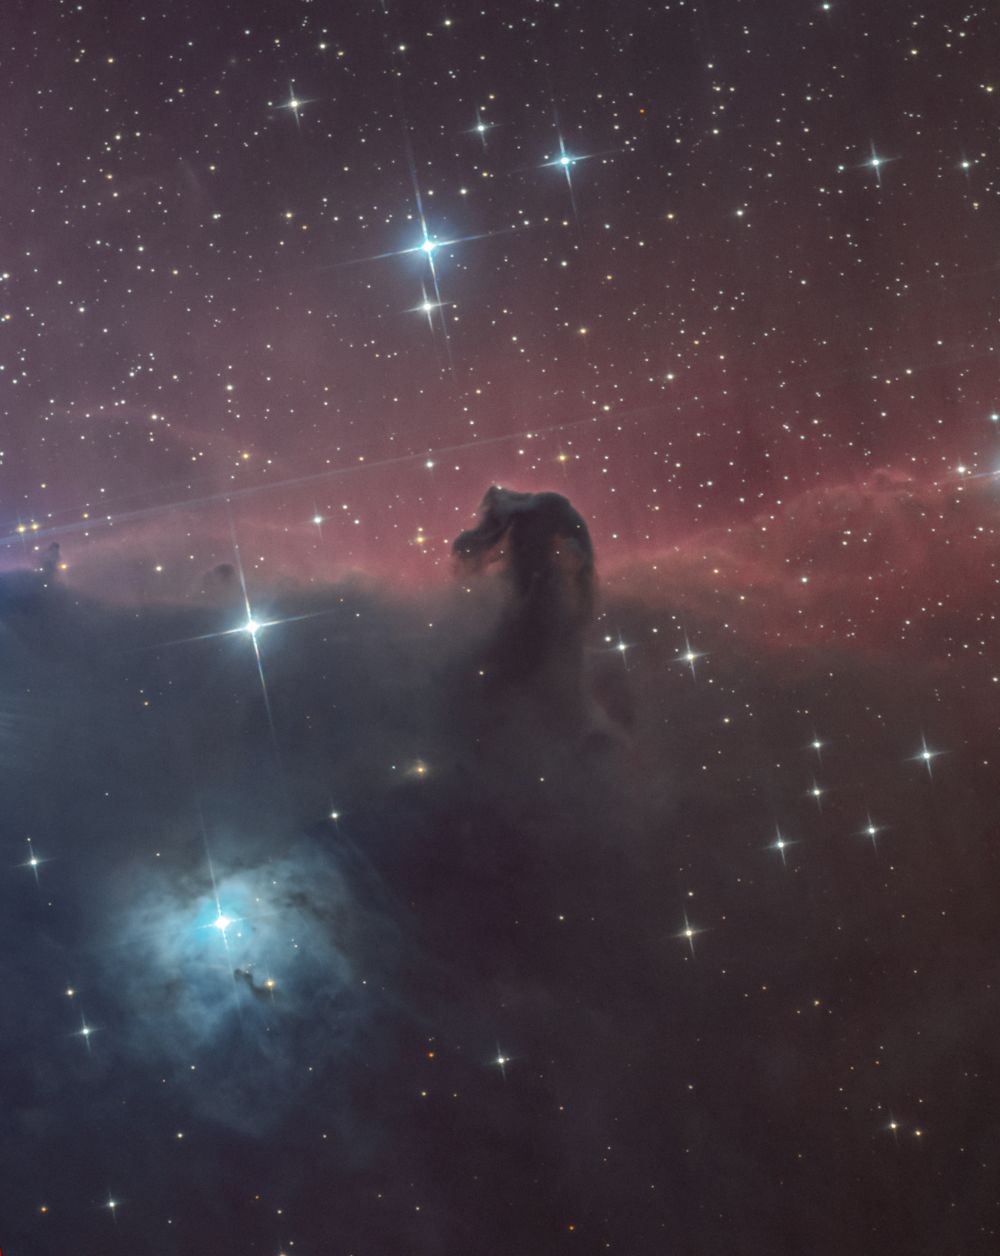 IC 434, Horsehead nebula